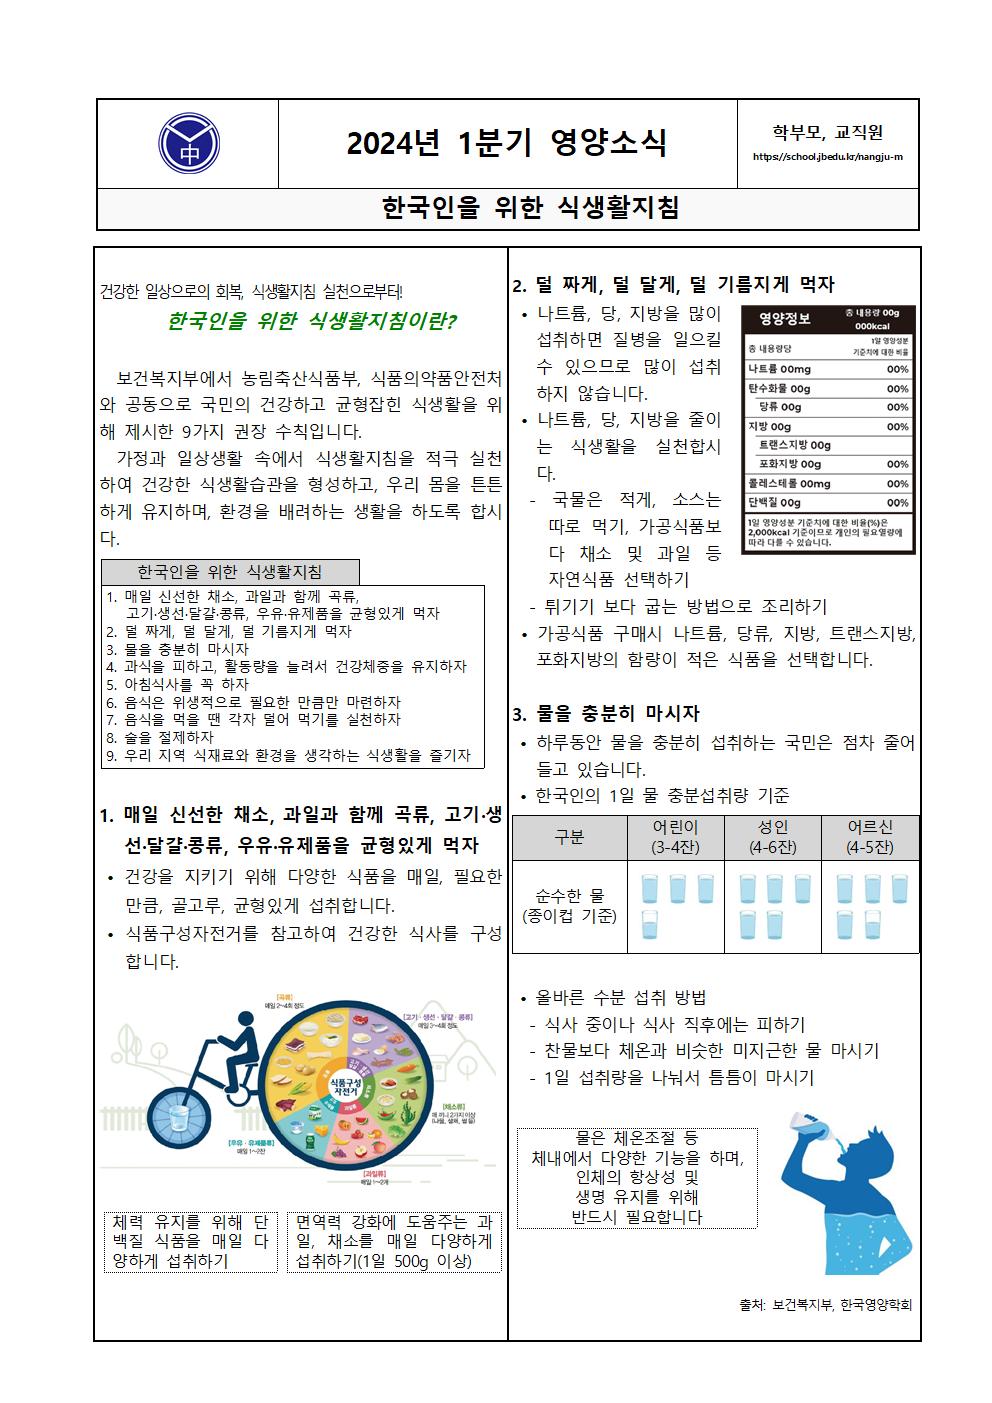 한국인을위한식생활지침-학부모,교직원(1분기)001